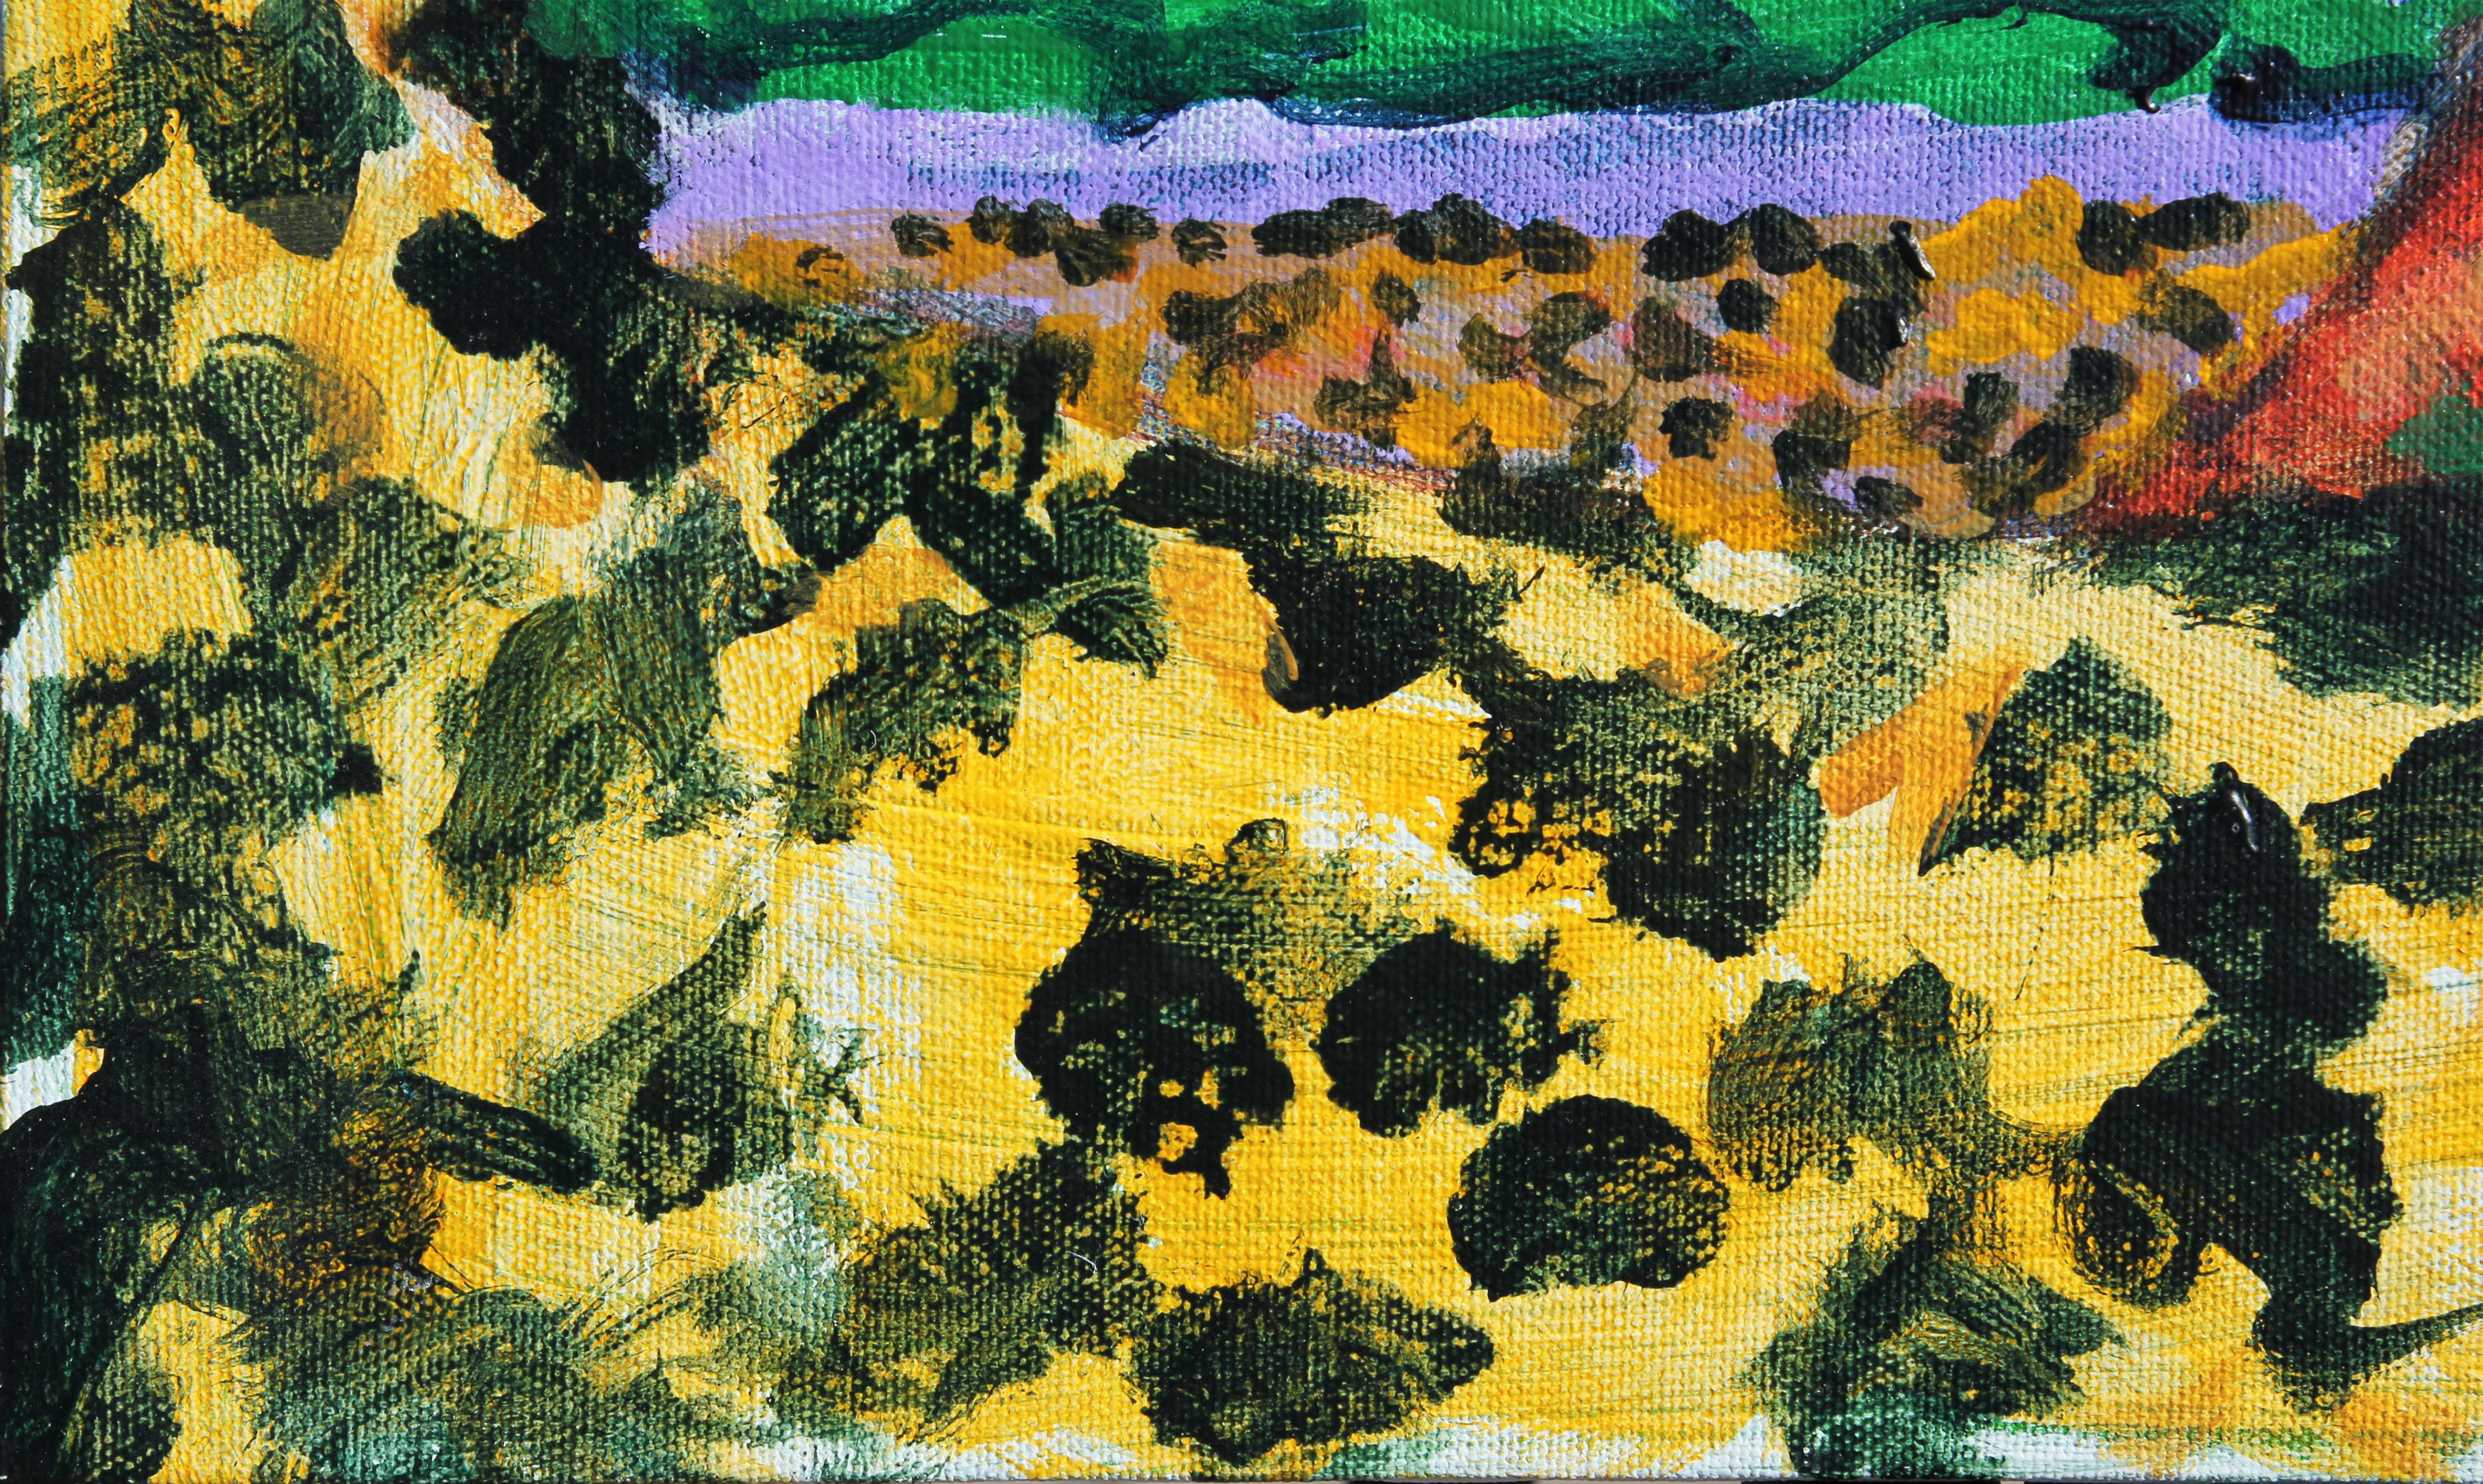 Buntes abstraktes Berglandschaftsgemälde des Künstlers Earl Staley aus Houston, Texas. Das Werk zeigt eine malerische Ansicht des Big Bend National Park in einem lebhaften fauvistischen Stil. Signiert und datiert in der unteren rechten Ecke der